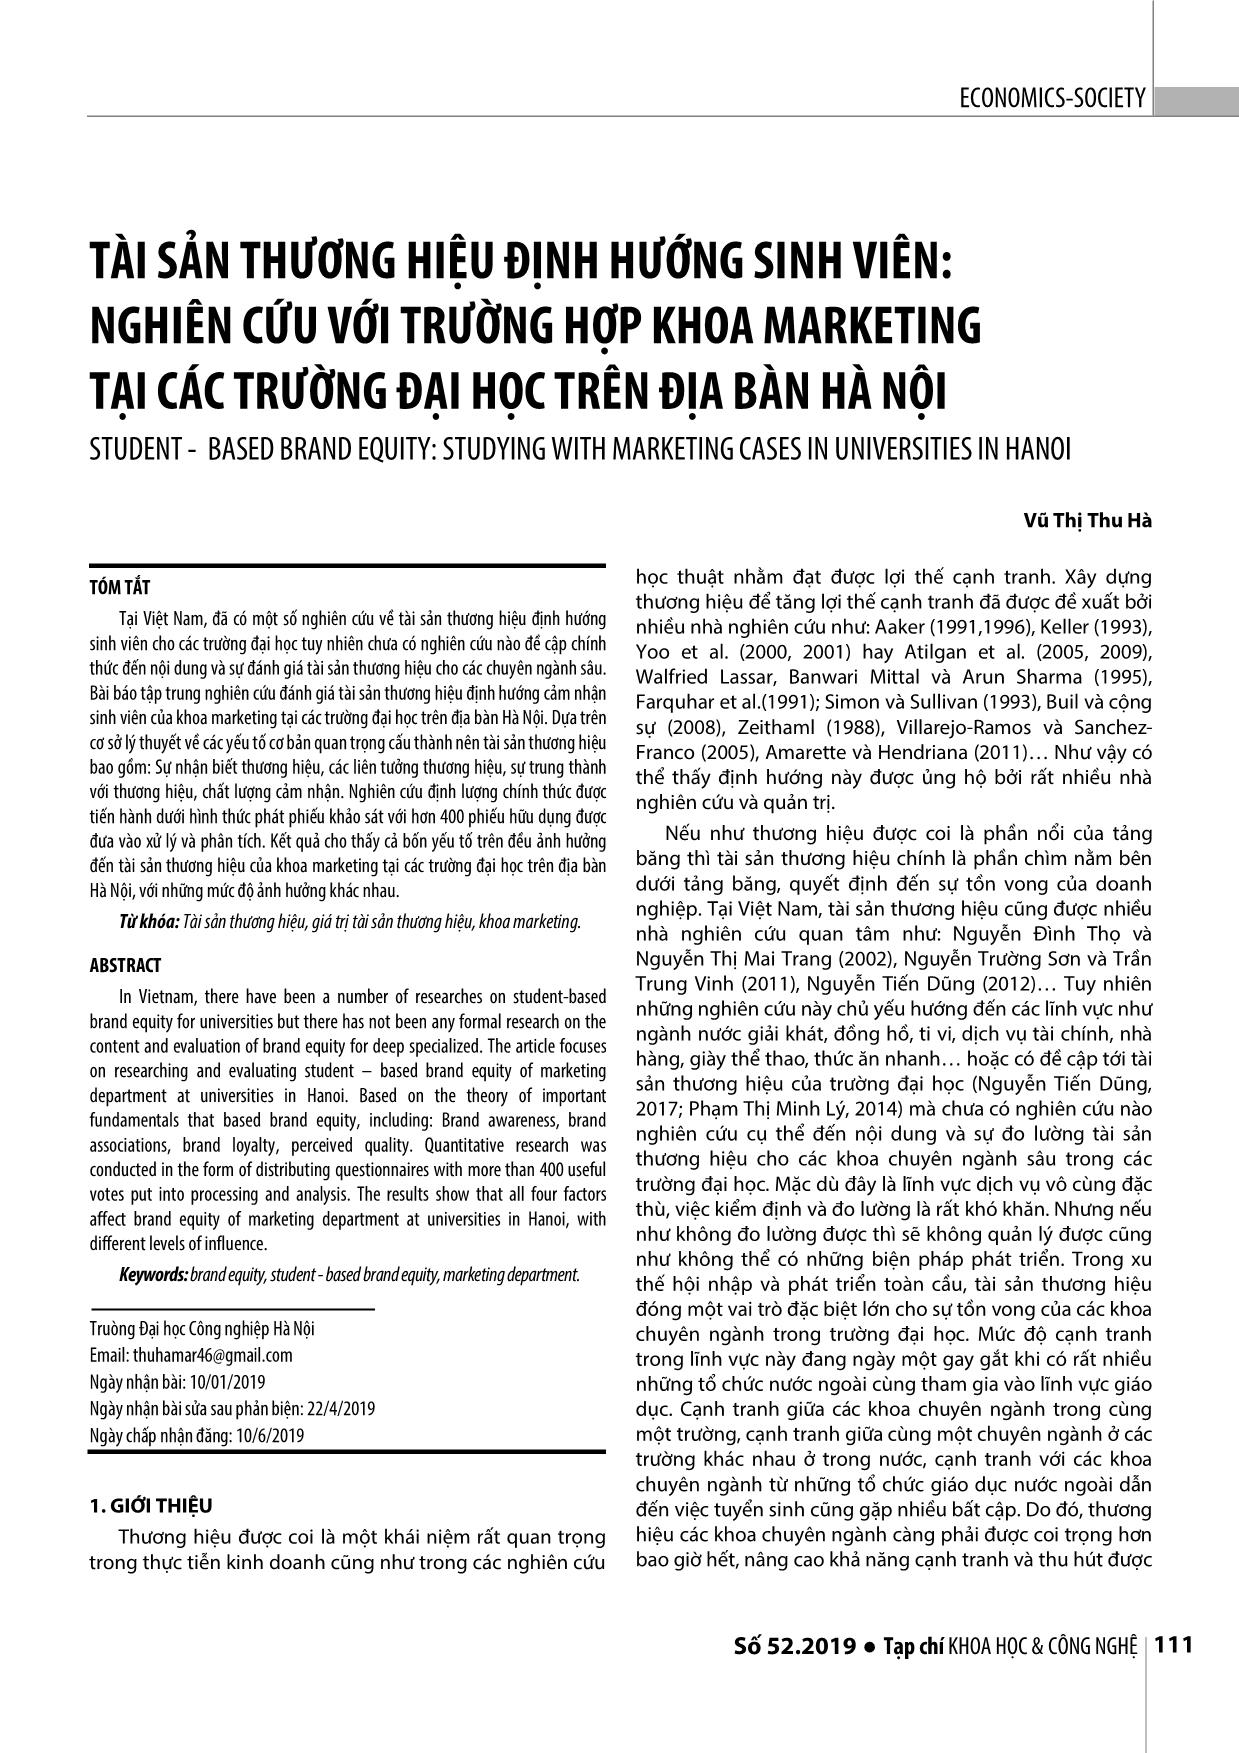 Tài sản thương hiệu định hướng sinh viên: Nghiên cứu với trường hợp khoa Marketing tại các trường đại học trên địa bàn Hà Nội trang 1